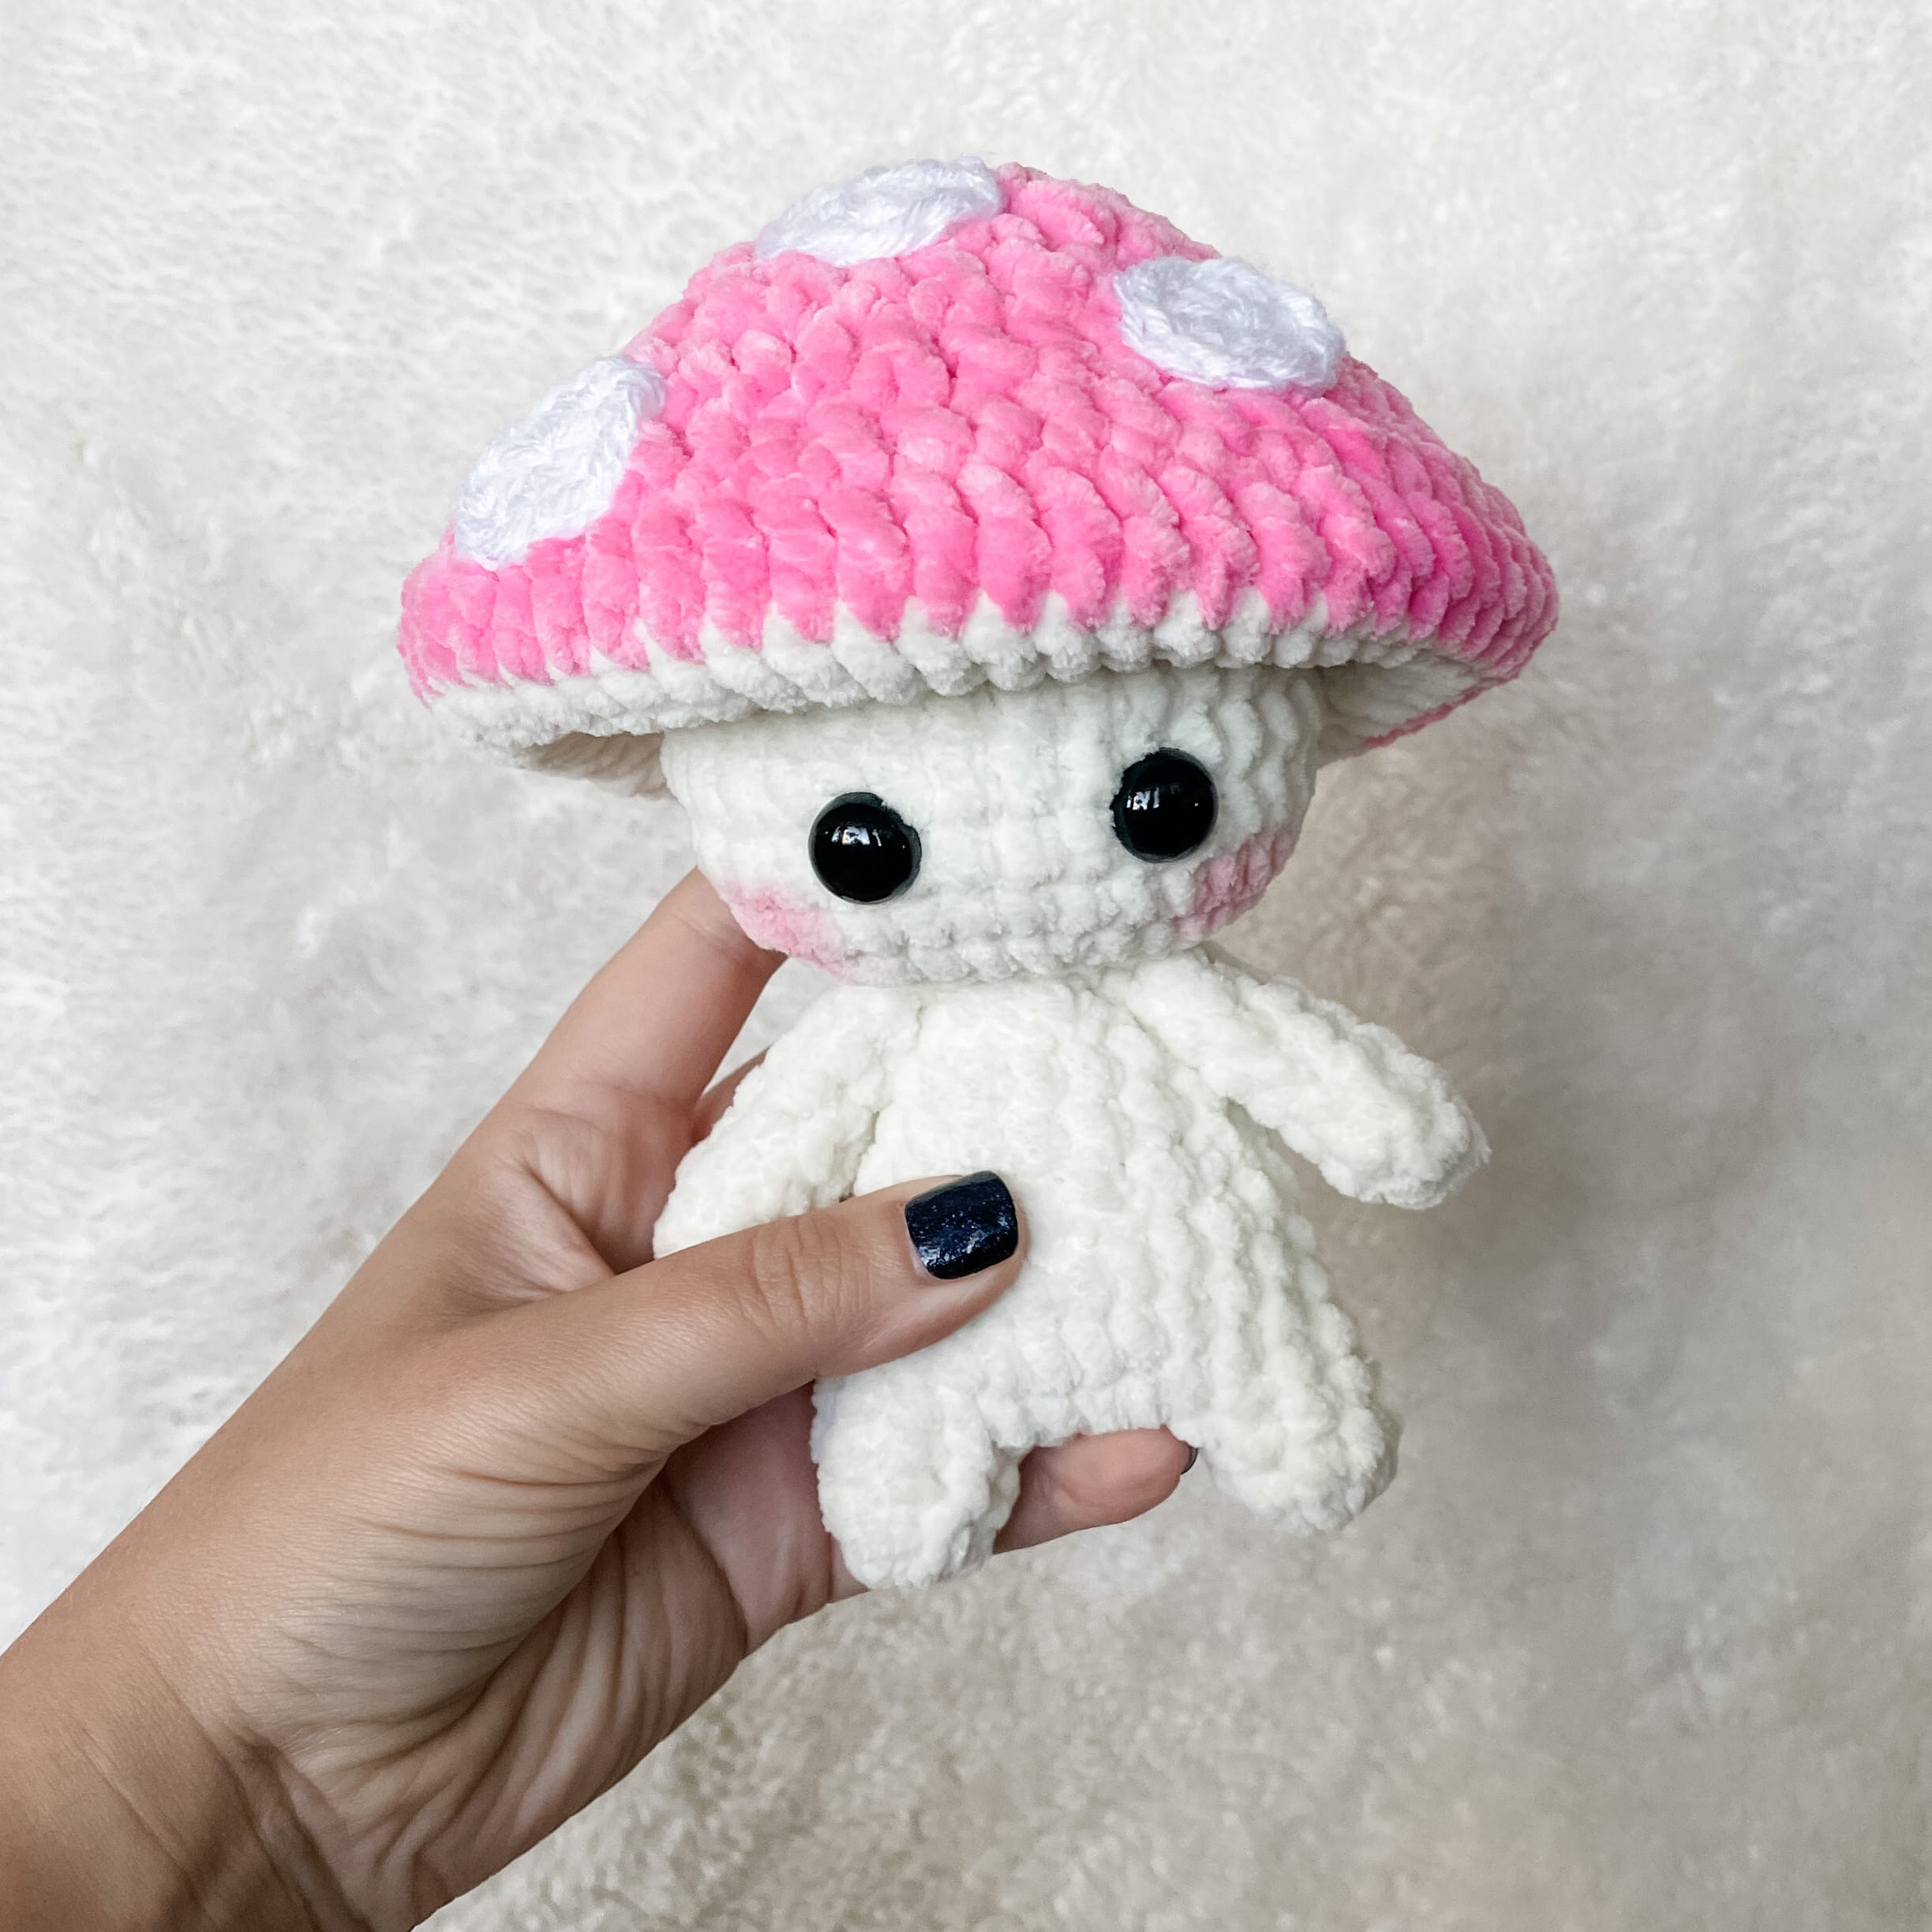 Free Crochet Mushroom Pattern